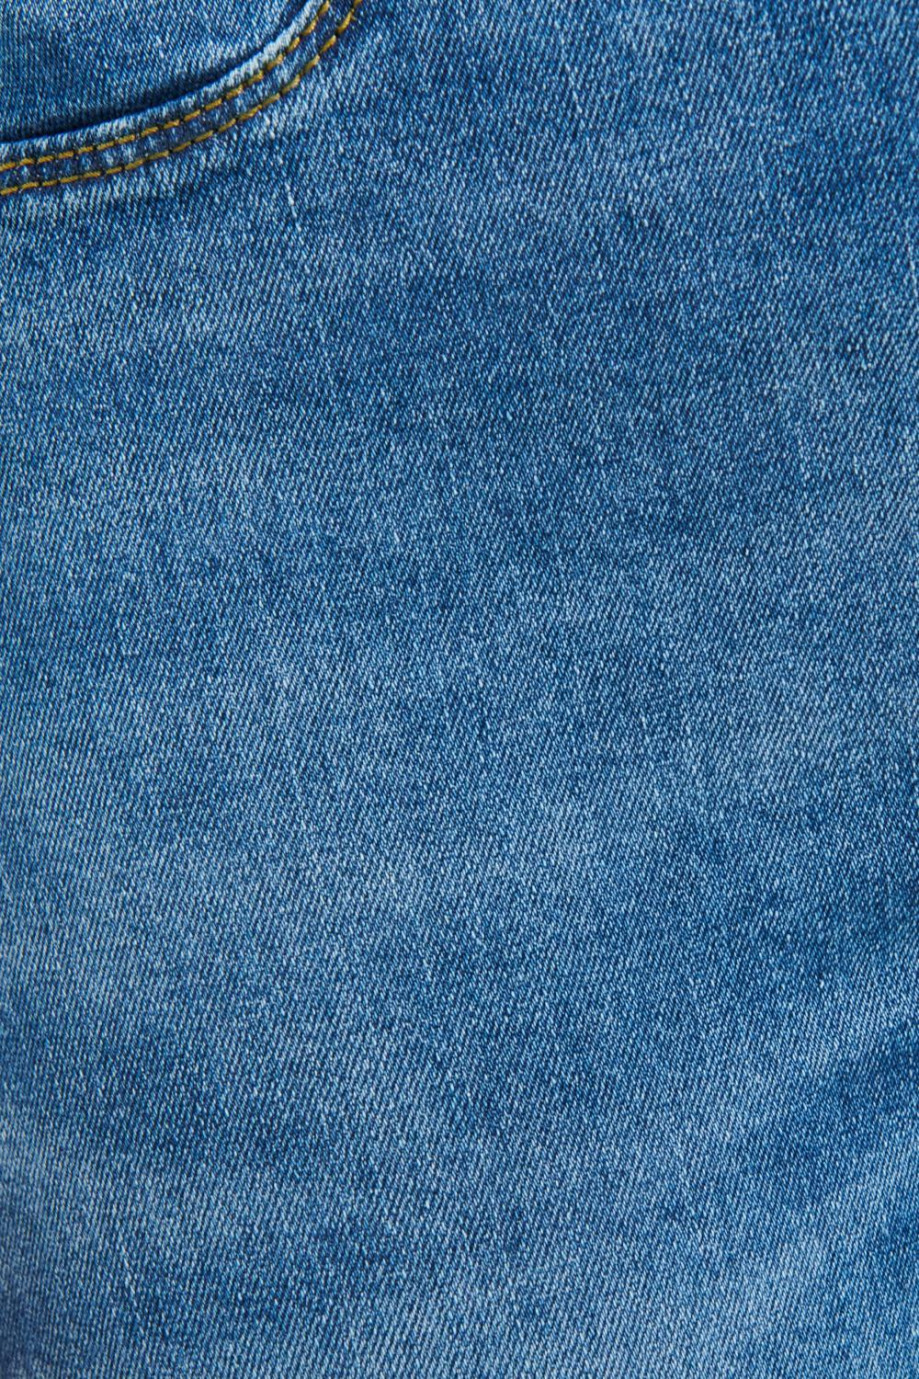 Jean azul medio tipo jegging con costuras en contraste y tiro alto